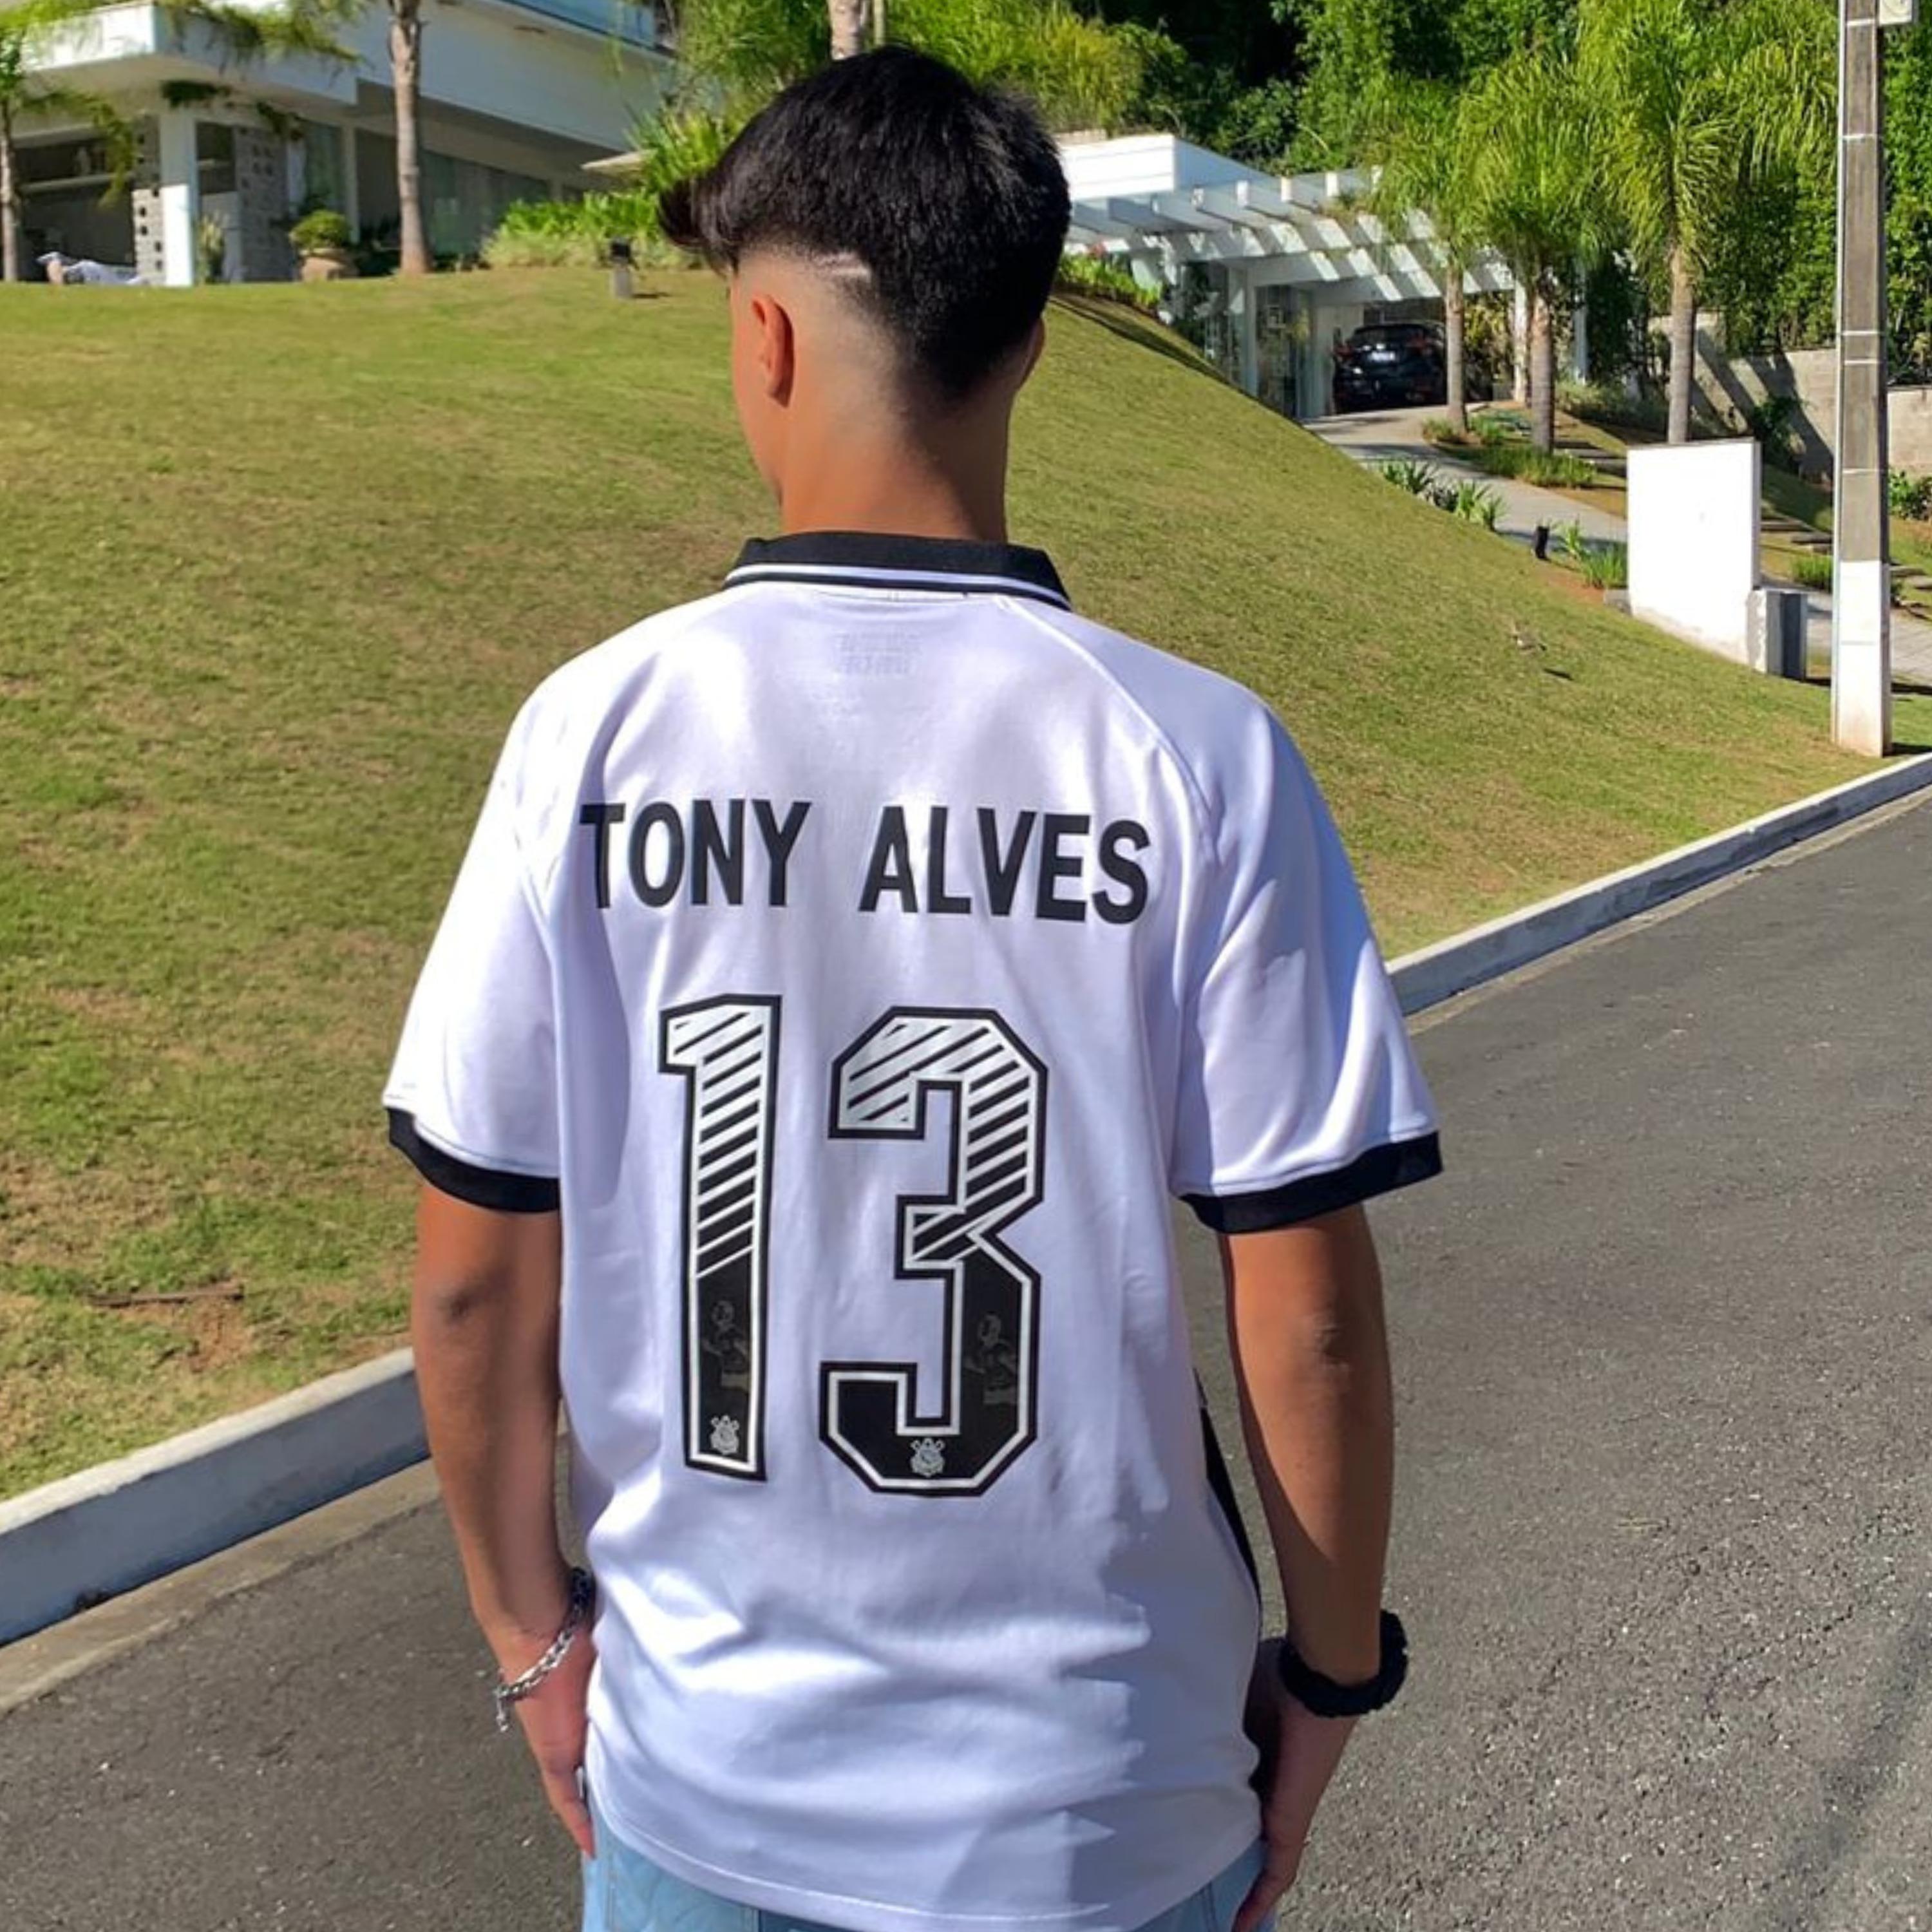 Tony Alves - Prazer, Tony Alves